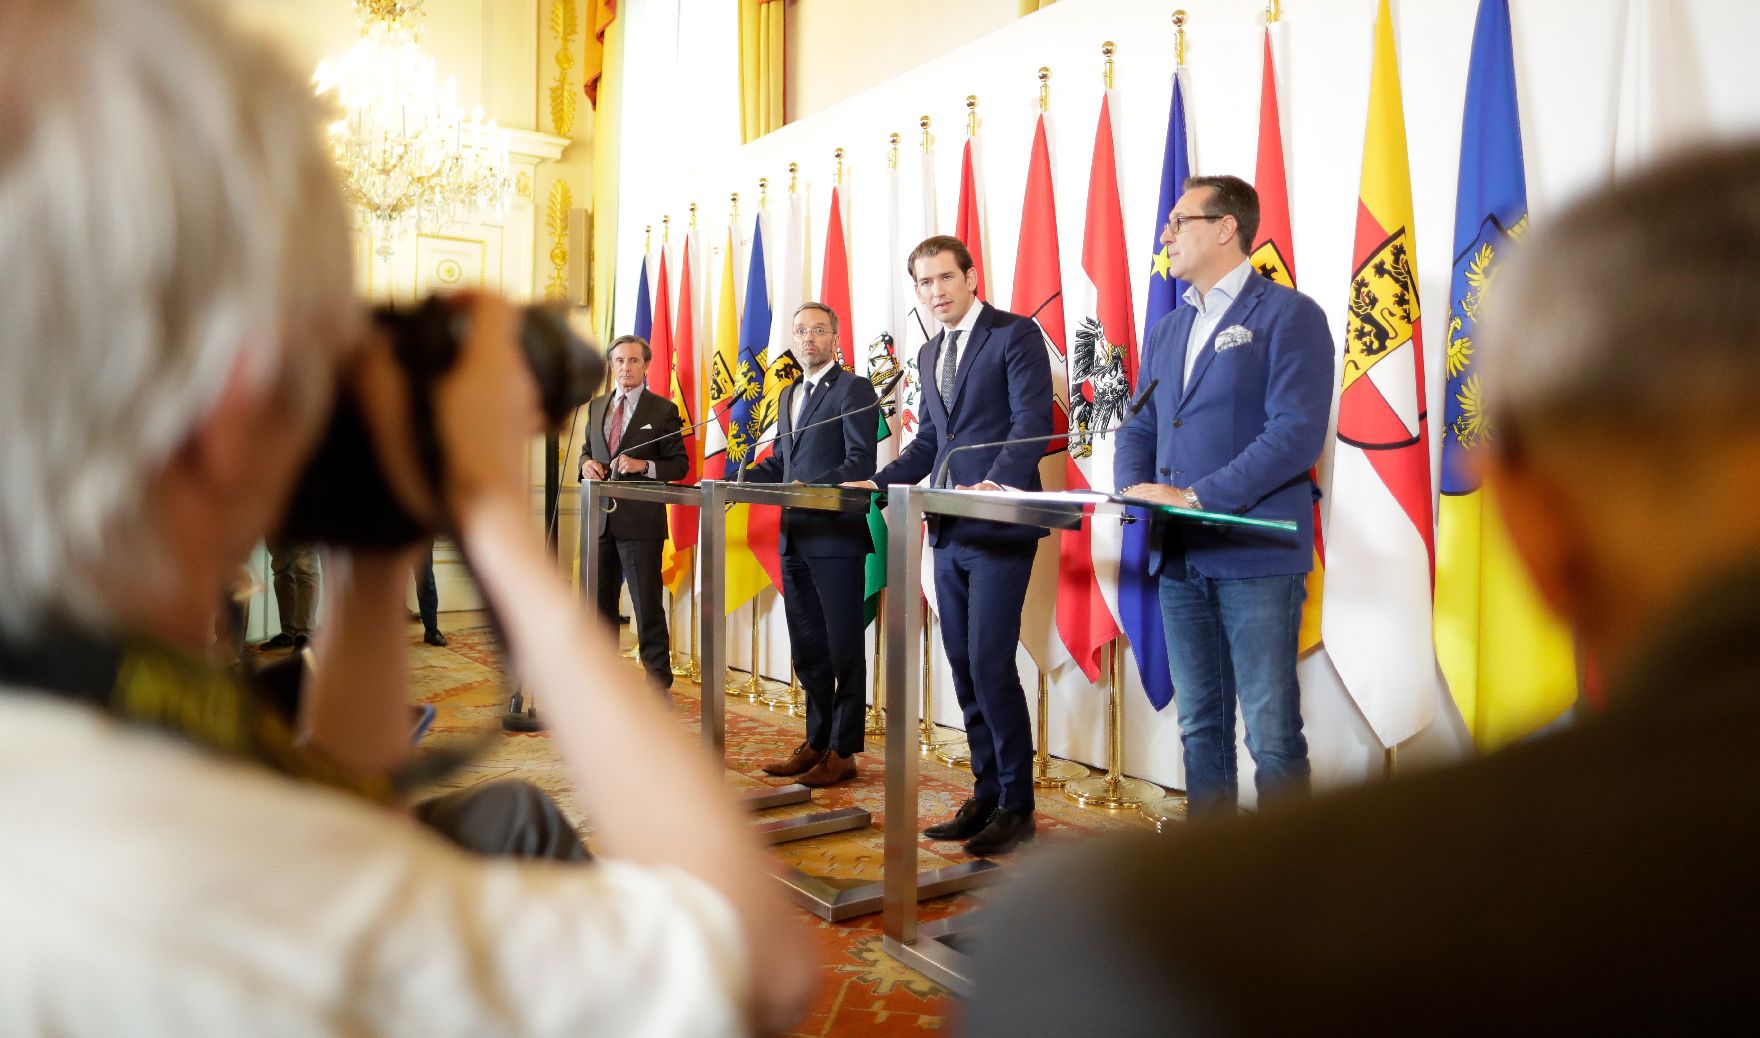 Am 3. Juli 2018 gab Bundeskanzler Sebastian Kurz (m.) gemeinsam mit Vizekanzler Heinz-Christian Strache (r.) und Bundesminister Herbert Kickl (l.) eine Pressekonferenz zu den deutschen Asylplänen.